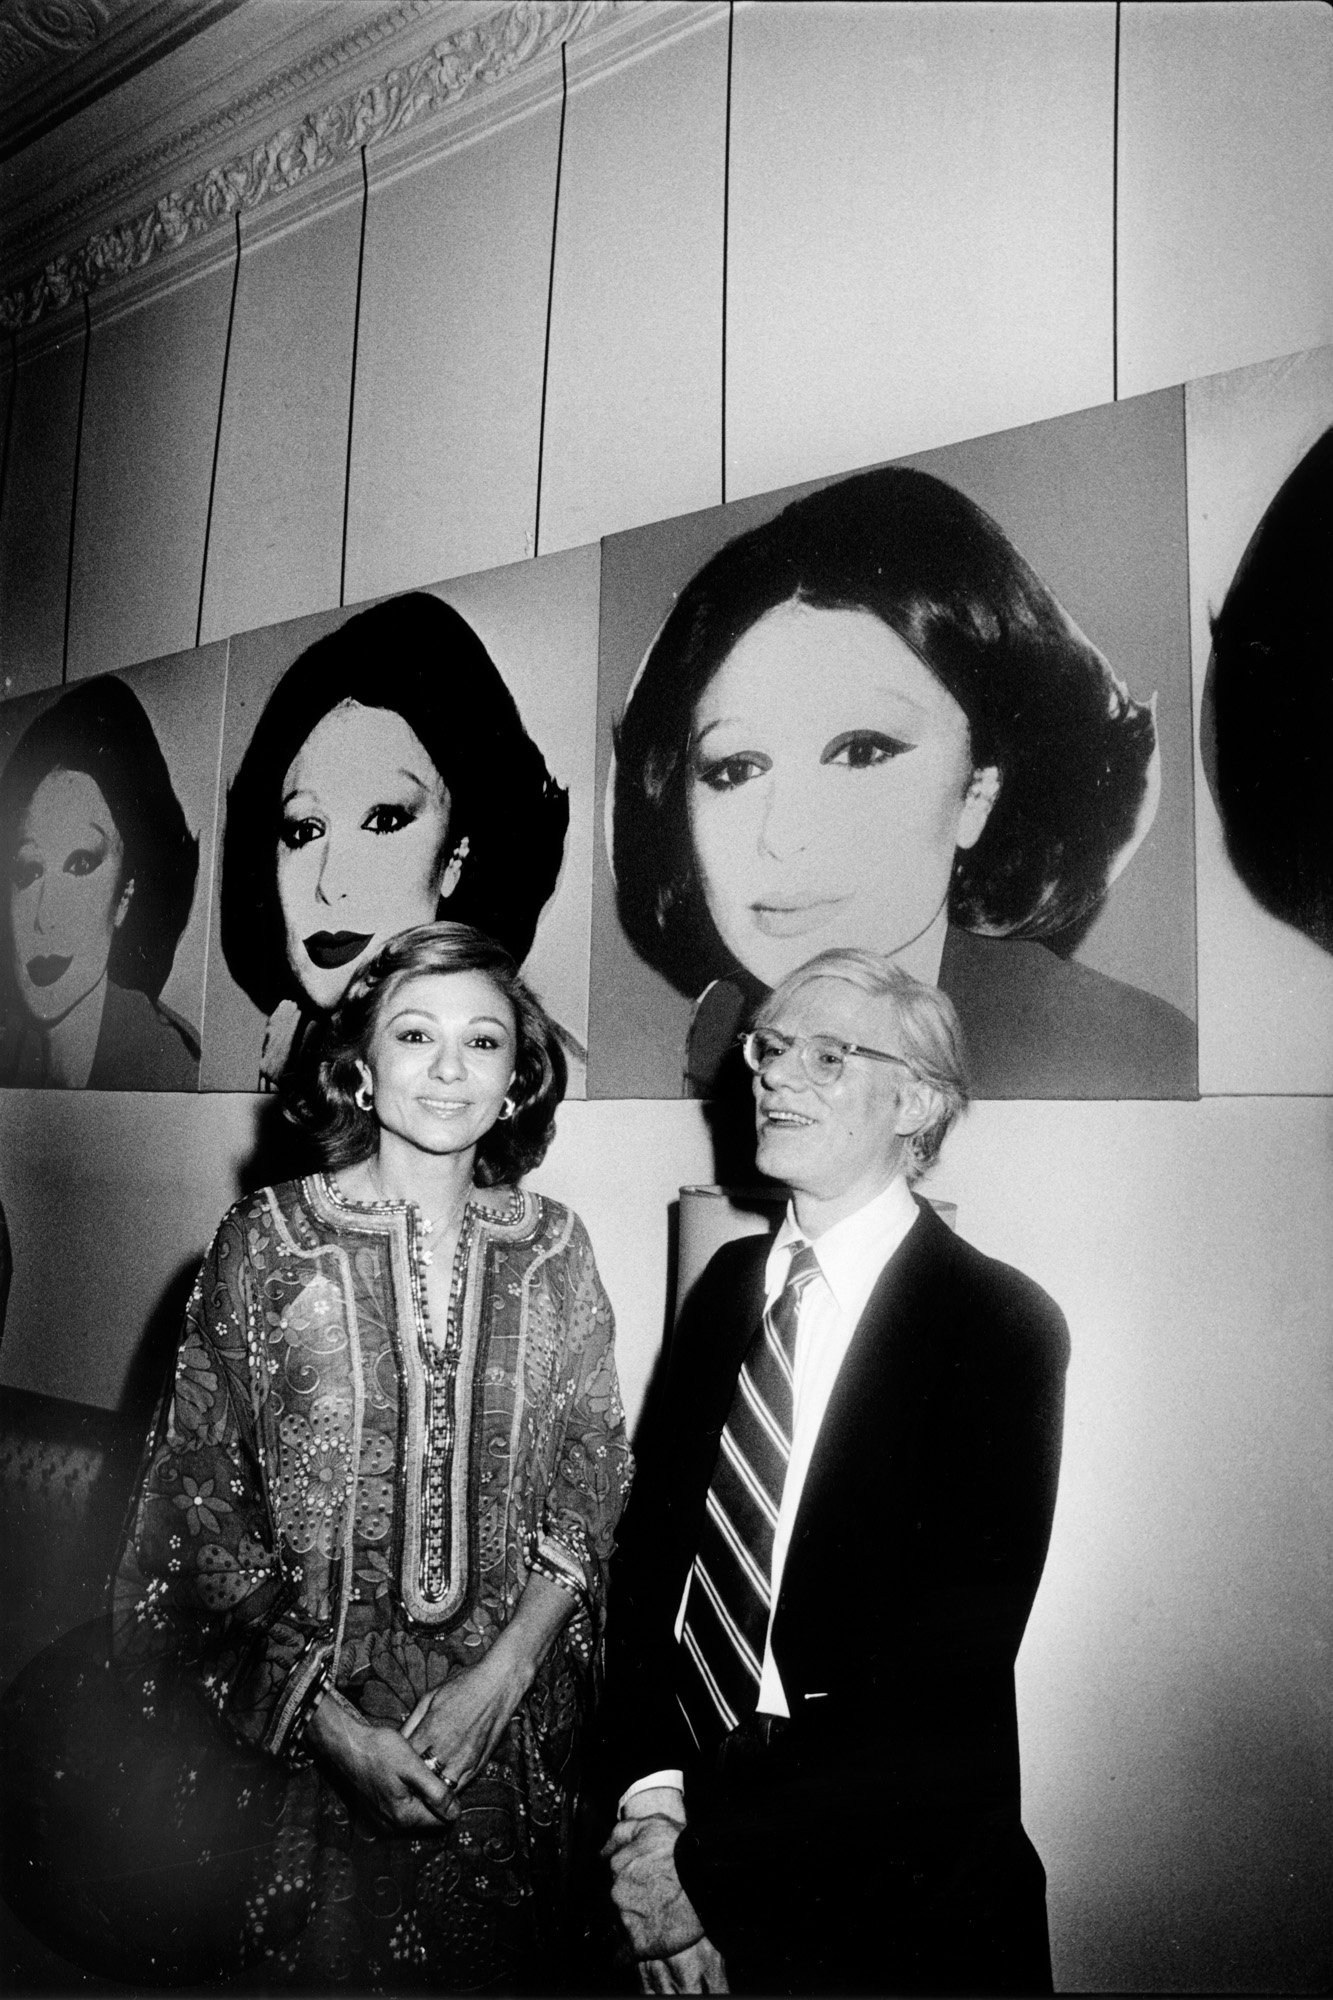 Andy Warhol, accompagné de Shahbanu Farah Pahlavi, assistant à une exposition de ses œuvres dans la station de métro secrète située sous le Waldorf Astoria - 1965